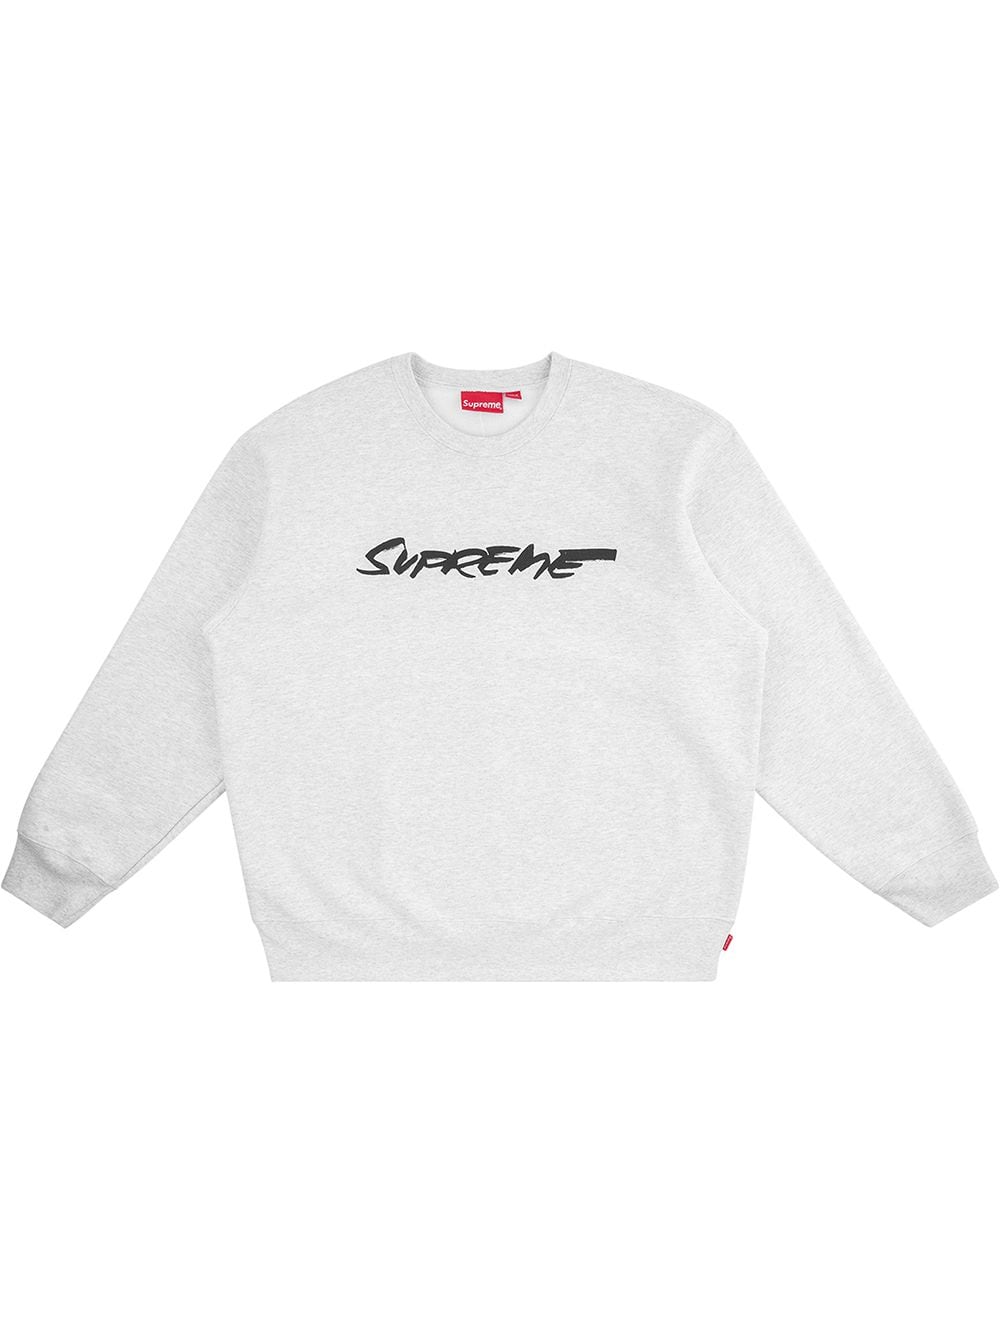 Futura logo sweatshirt